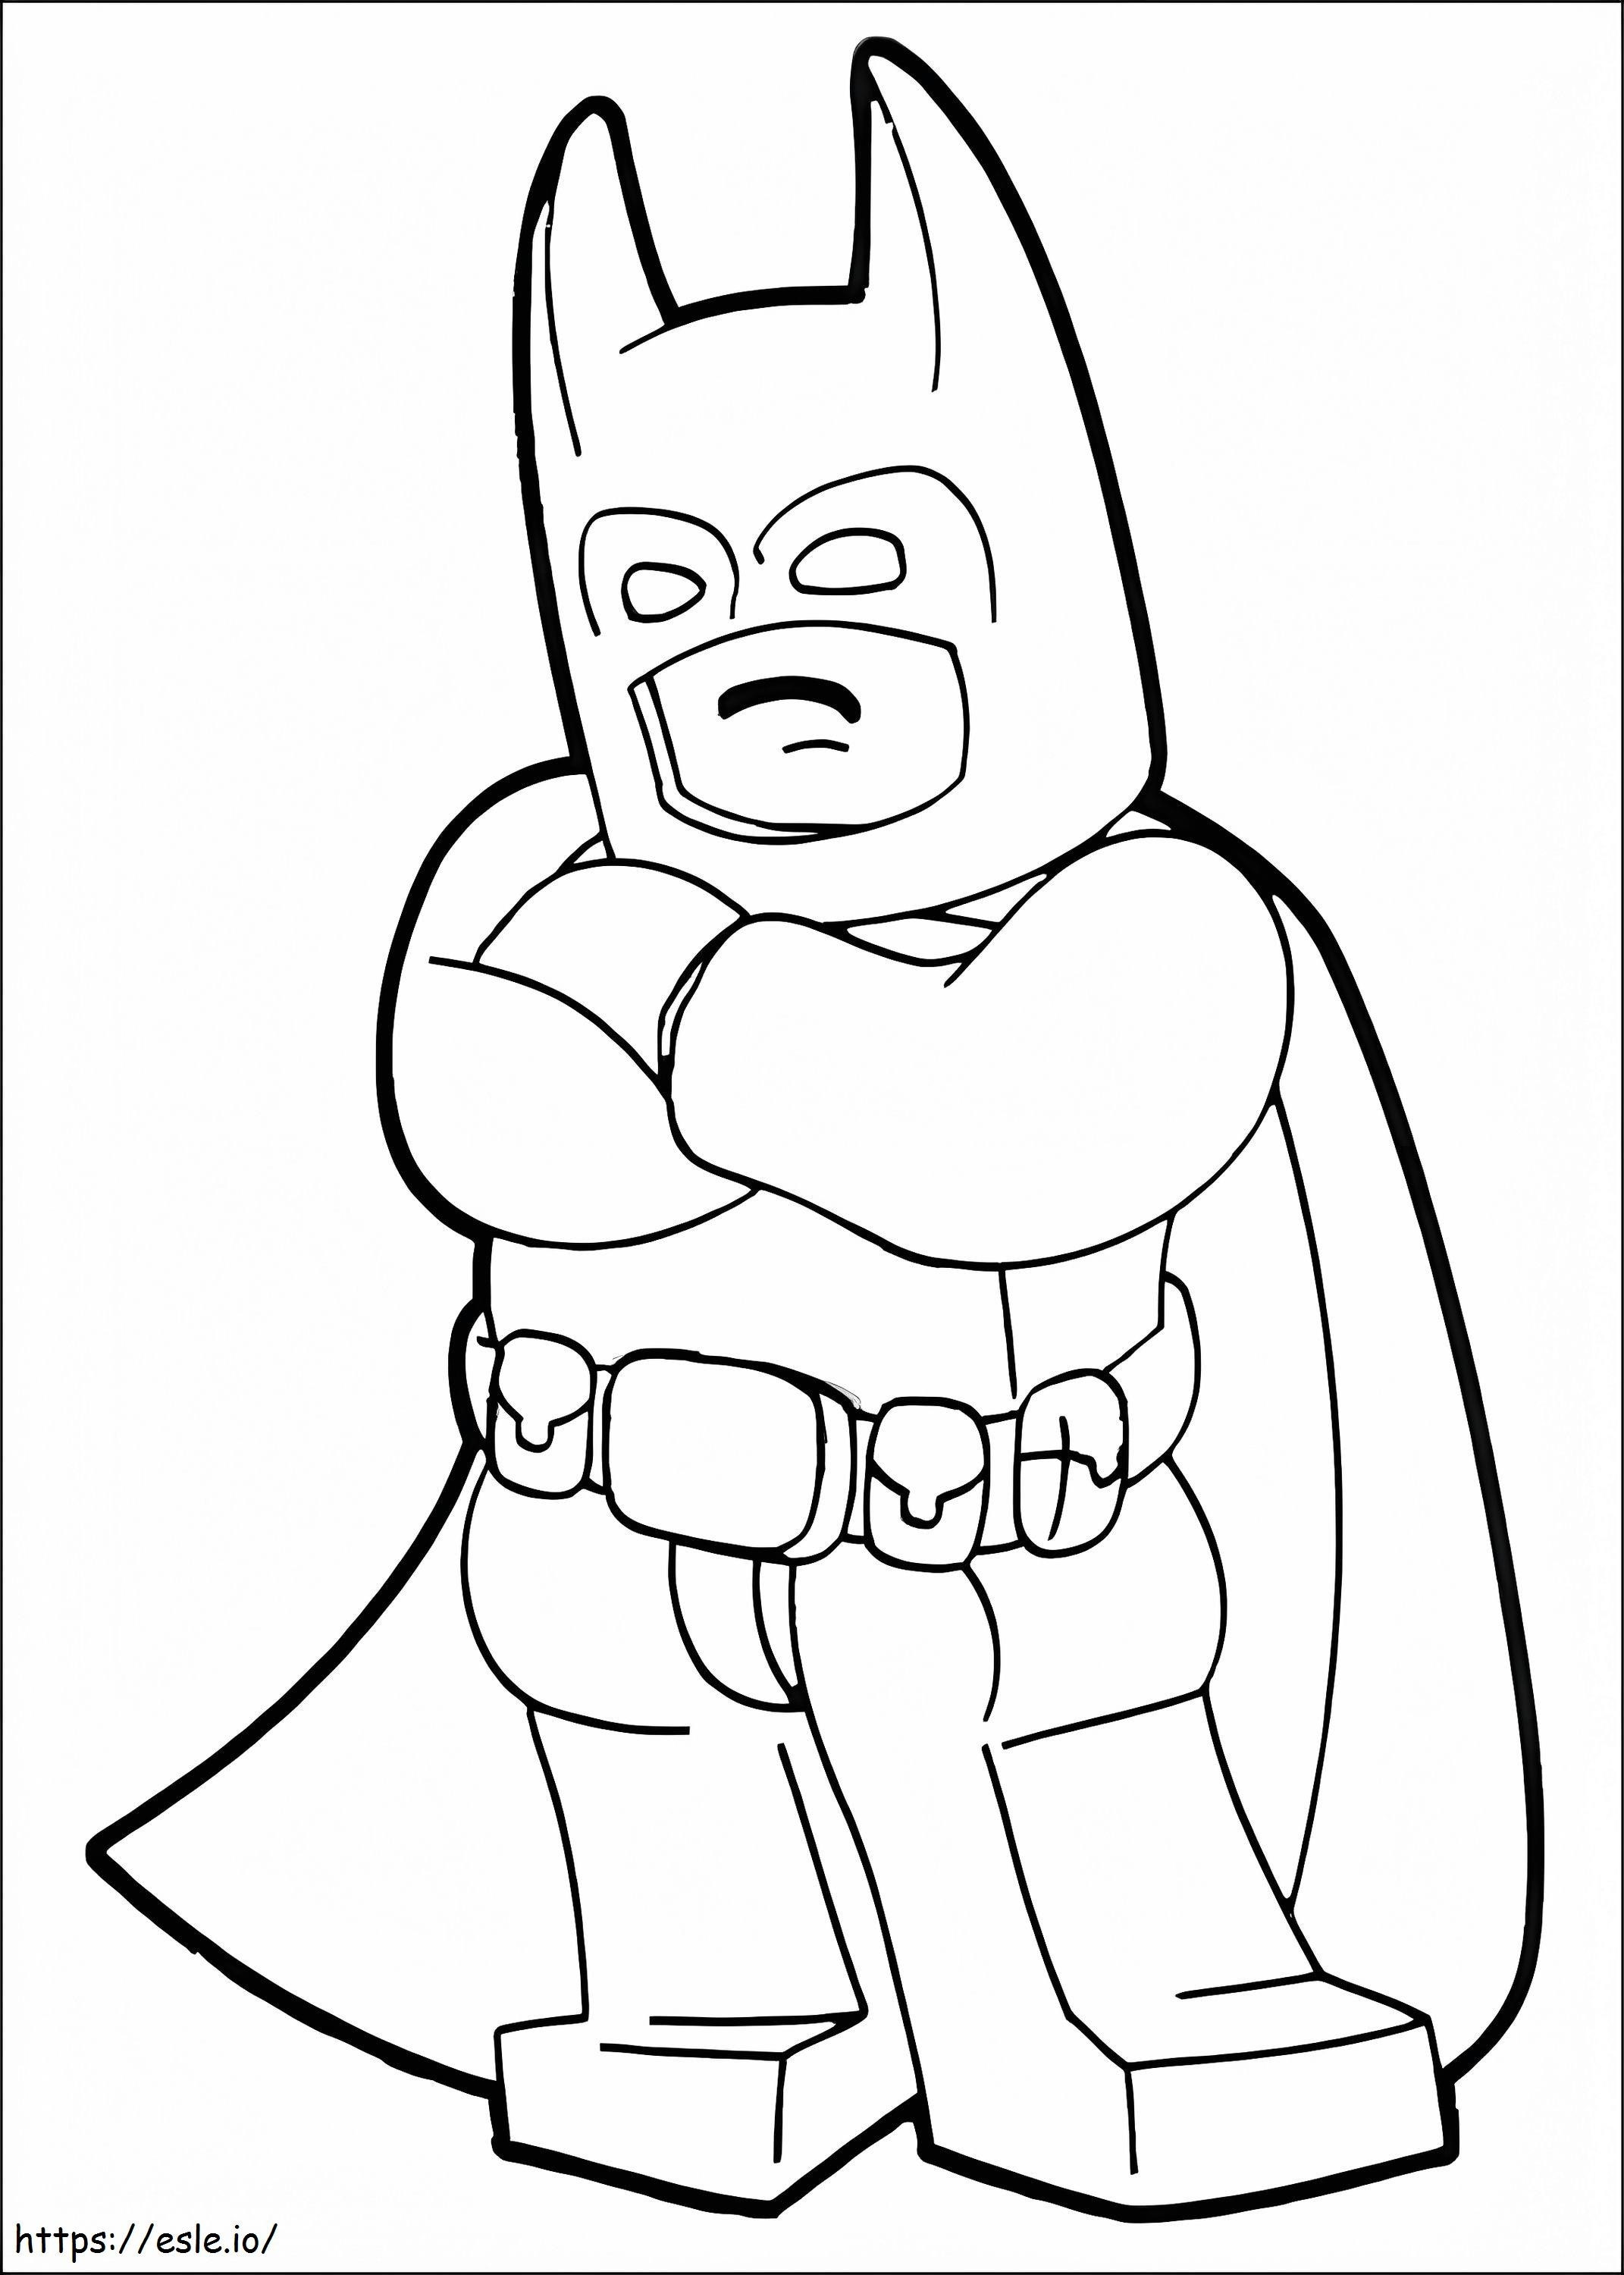 Fun Lego Batman coloring page